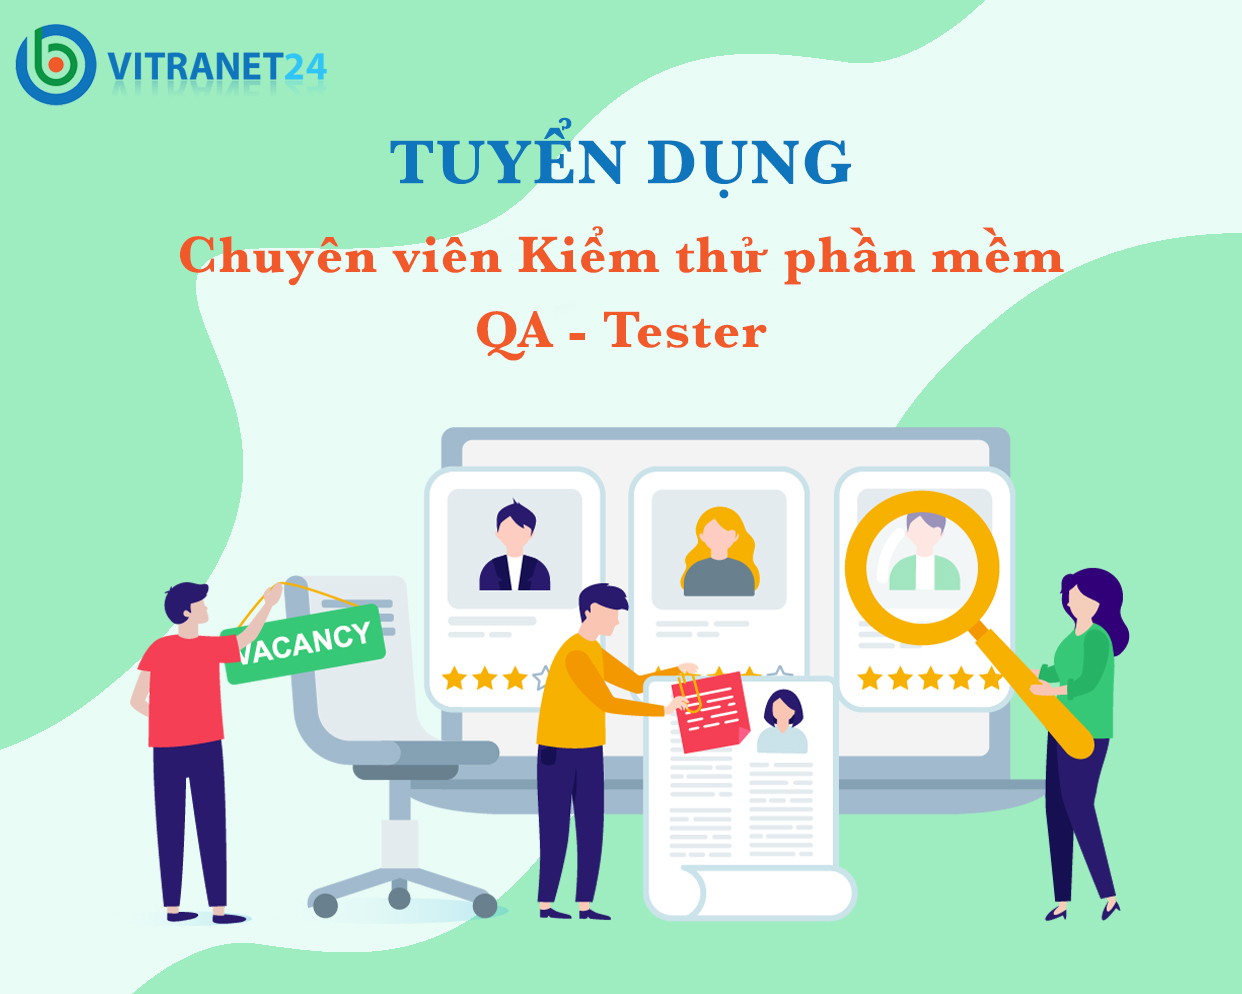 Vitranet24 tuyển dụng 5 Chuyên viên kiểm thử phần mềm tại Hà Nội